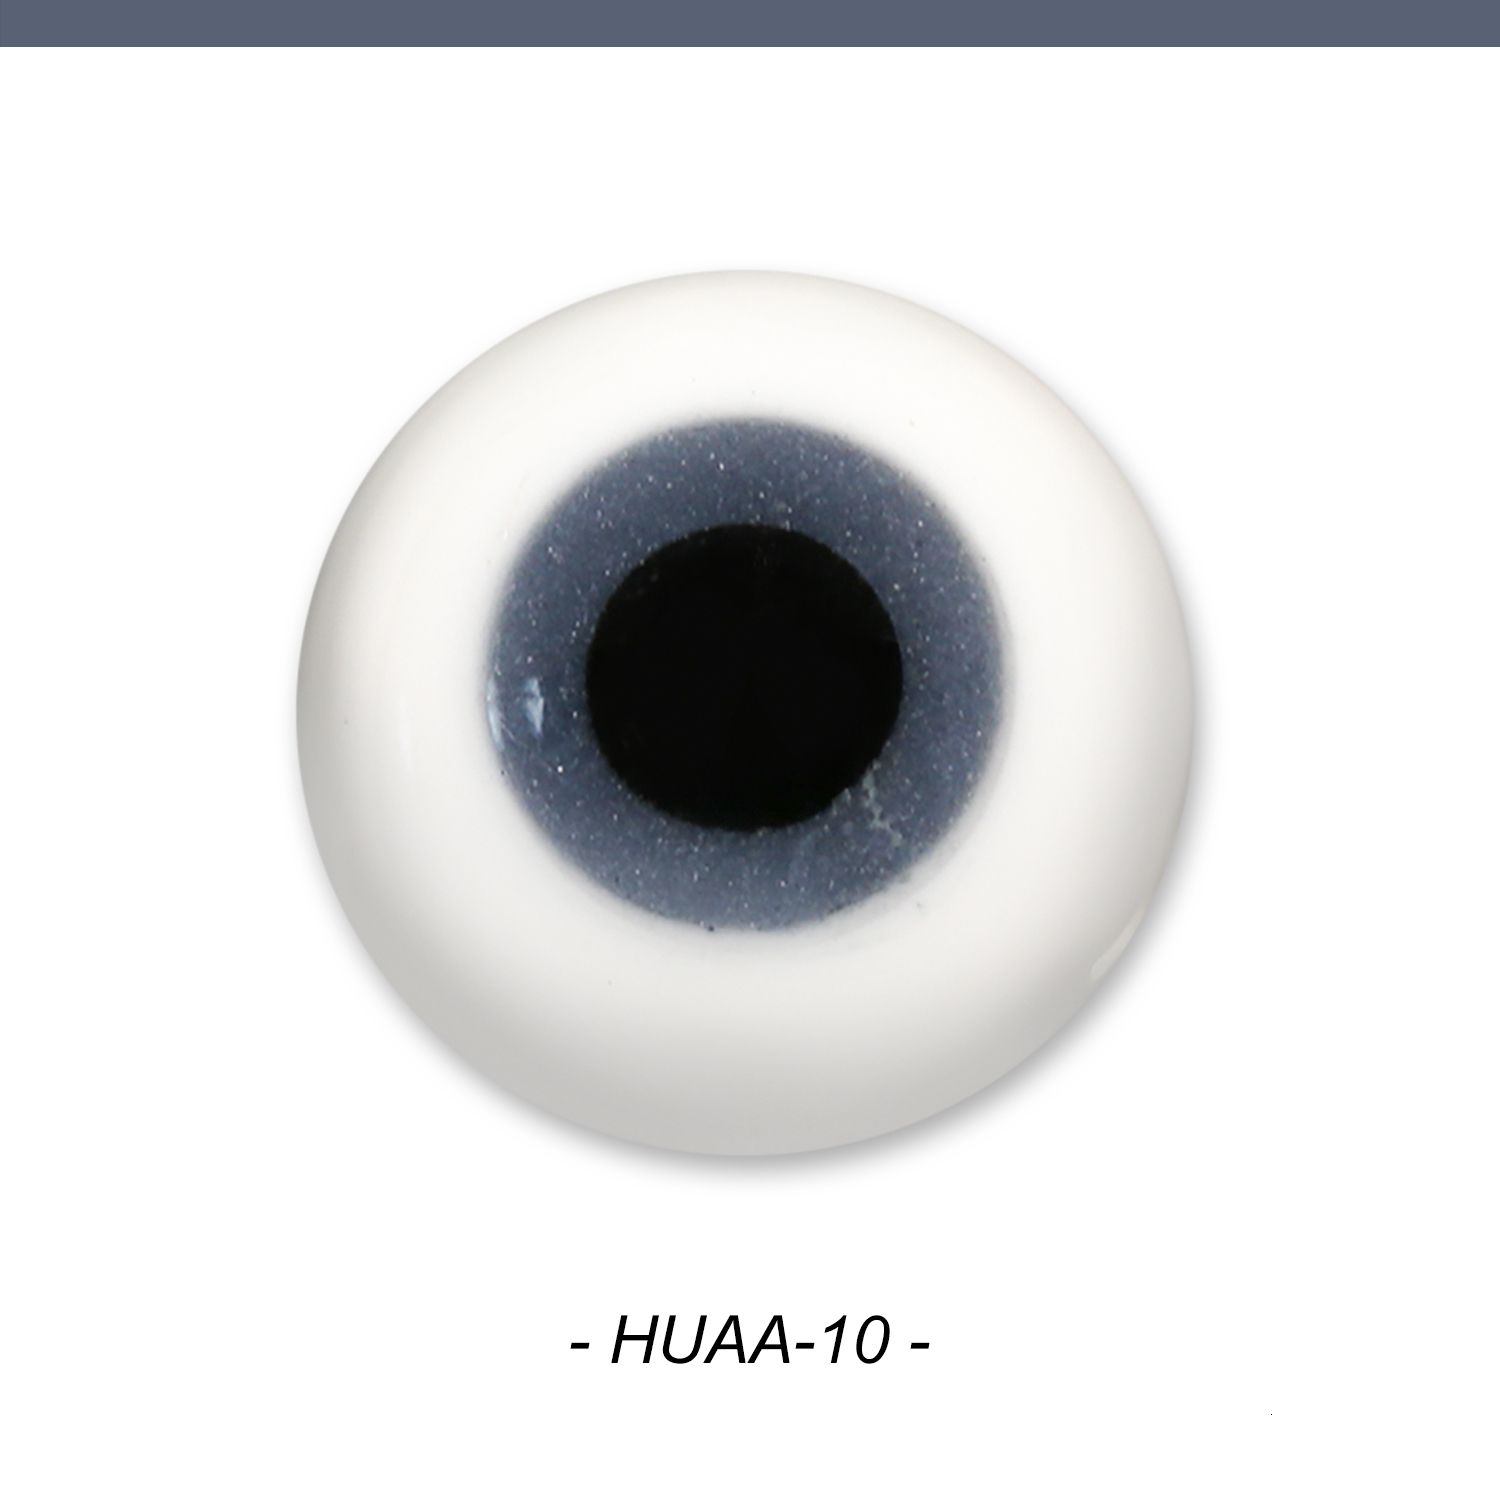 Huaa-10-16mm